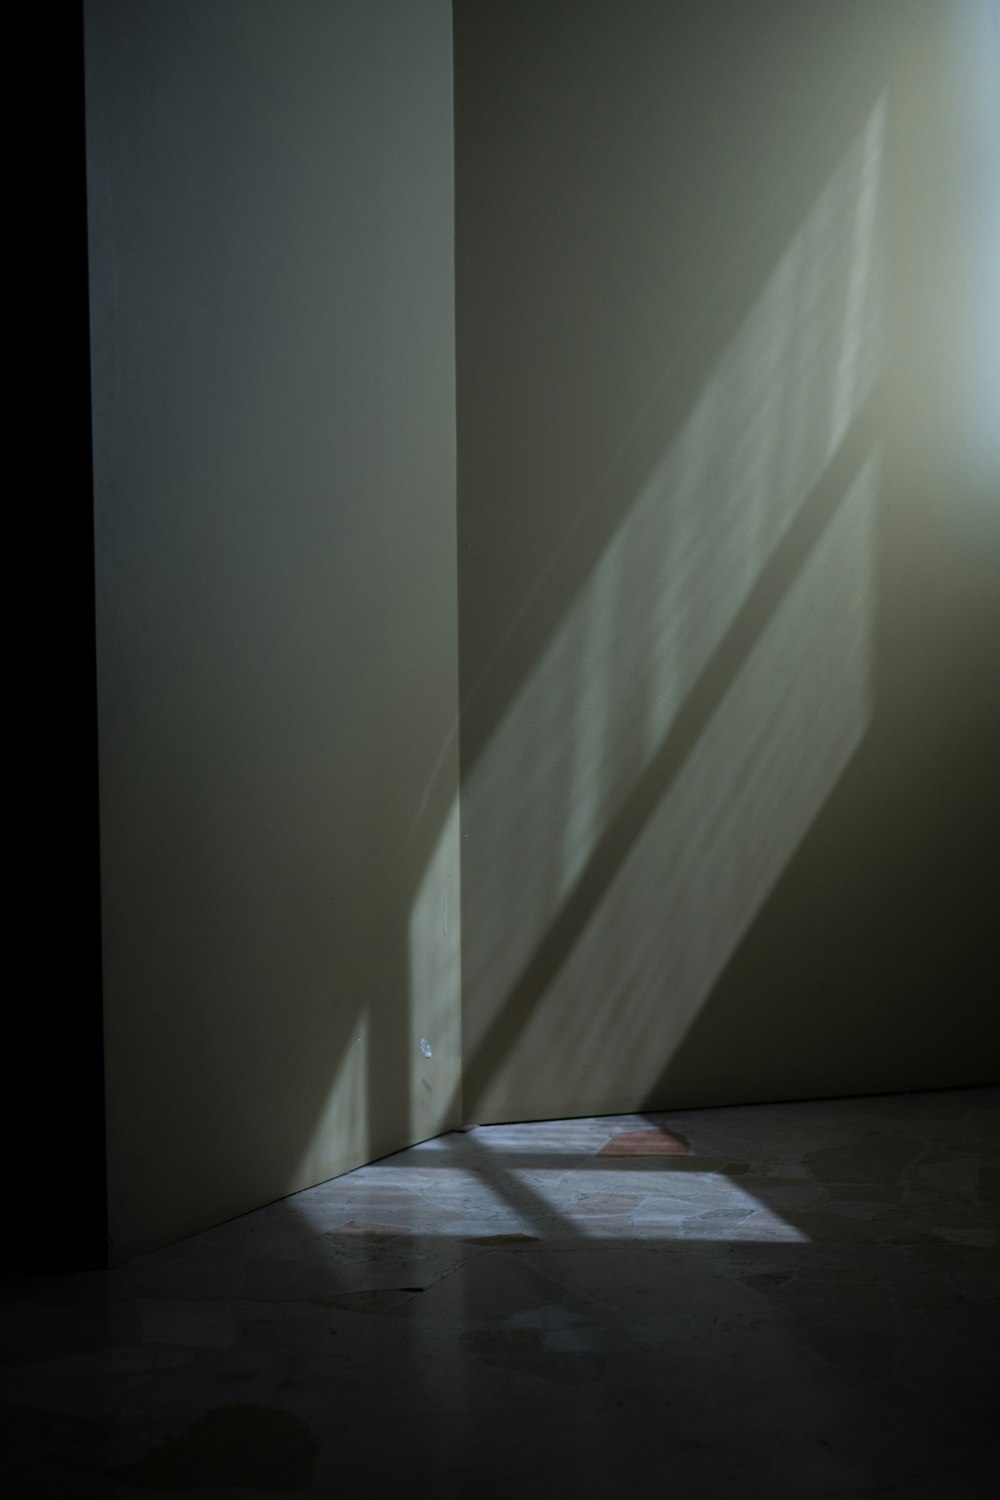 Schatten an einer Wand von Licht, das durch ein Fenster kommt.